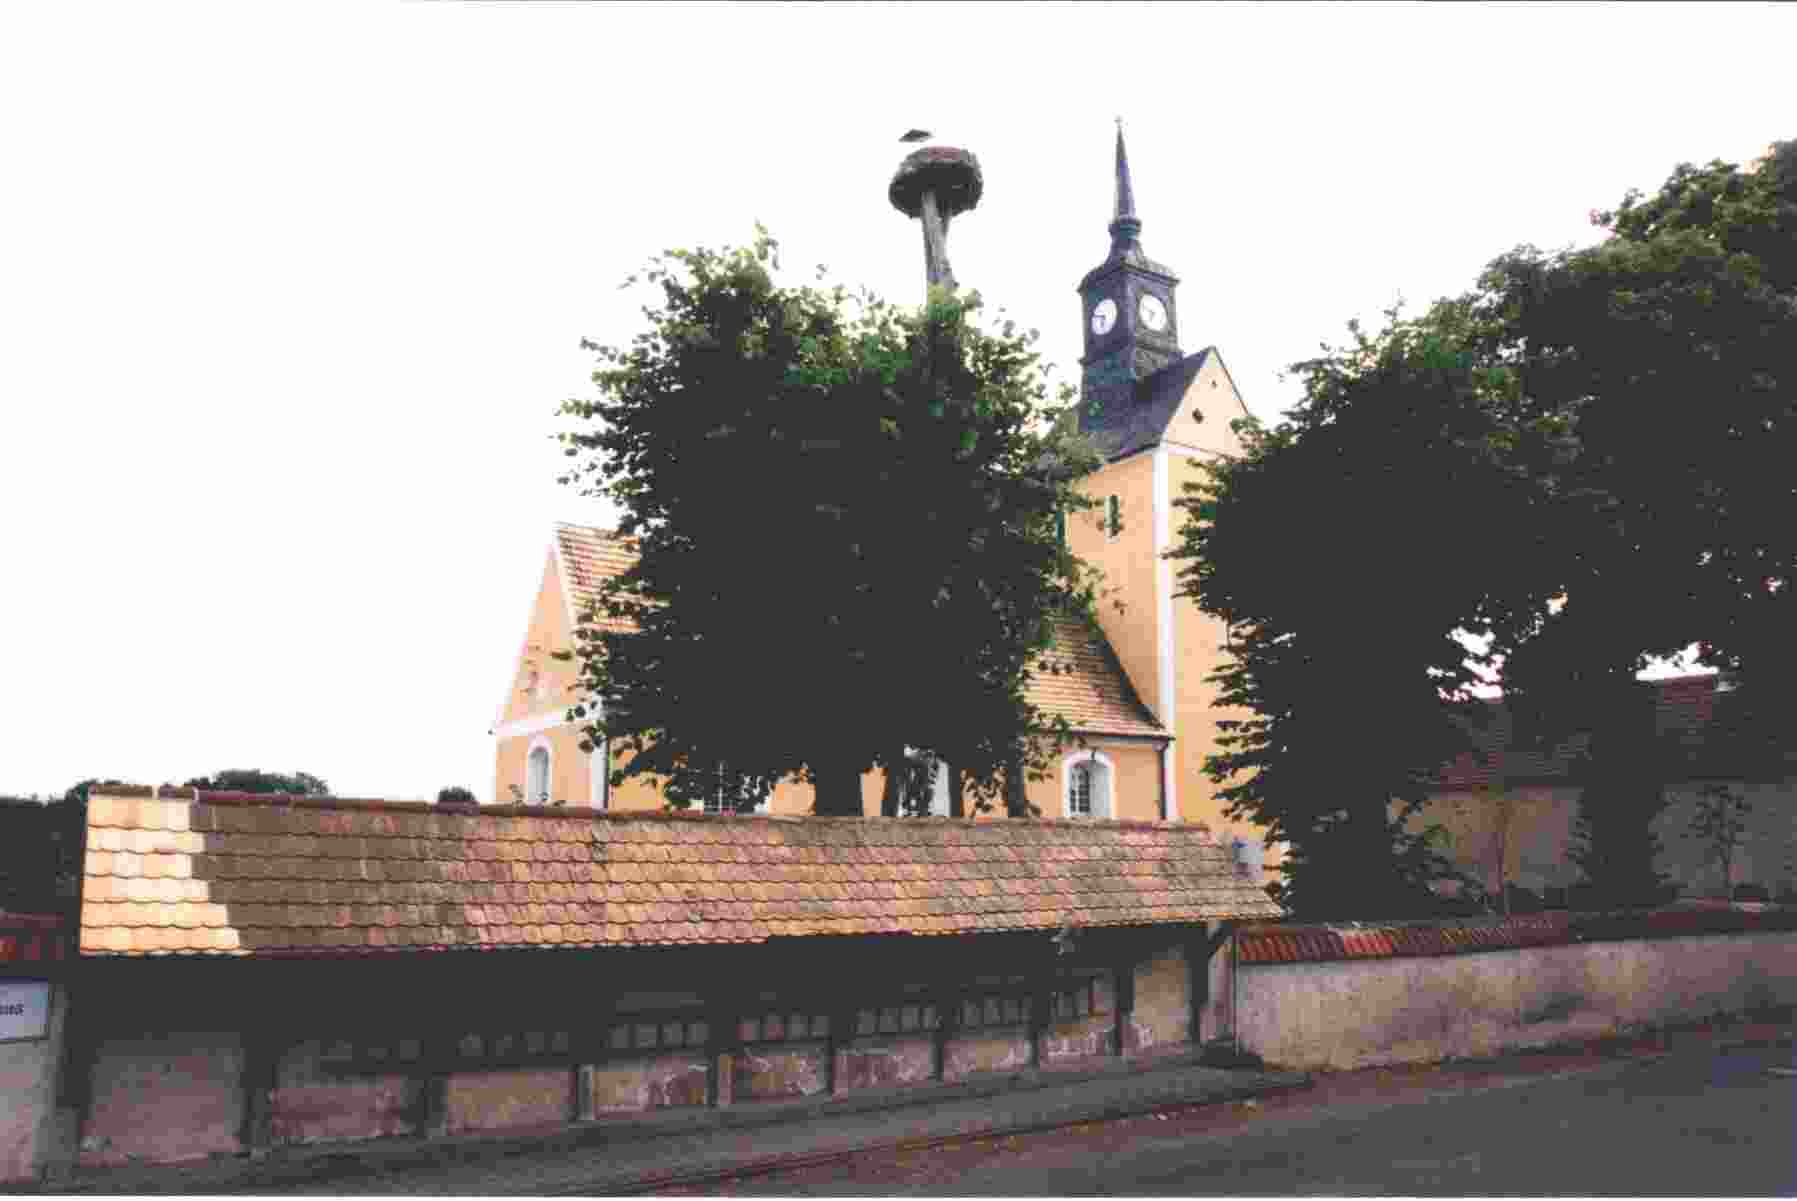 Kirche, Leiterhaus und Storchennest_1.jpg